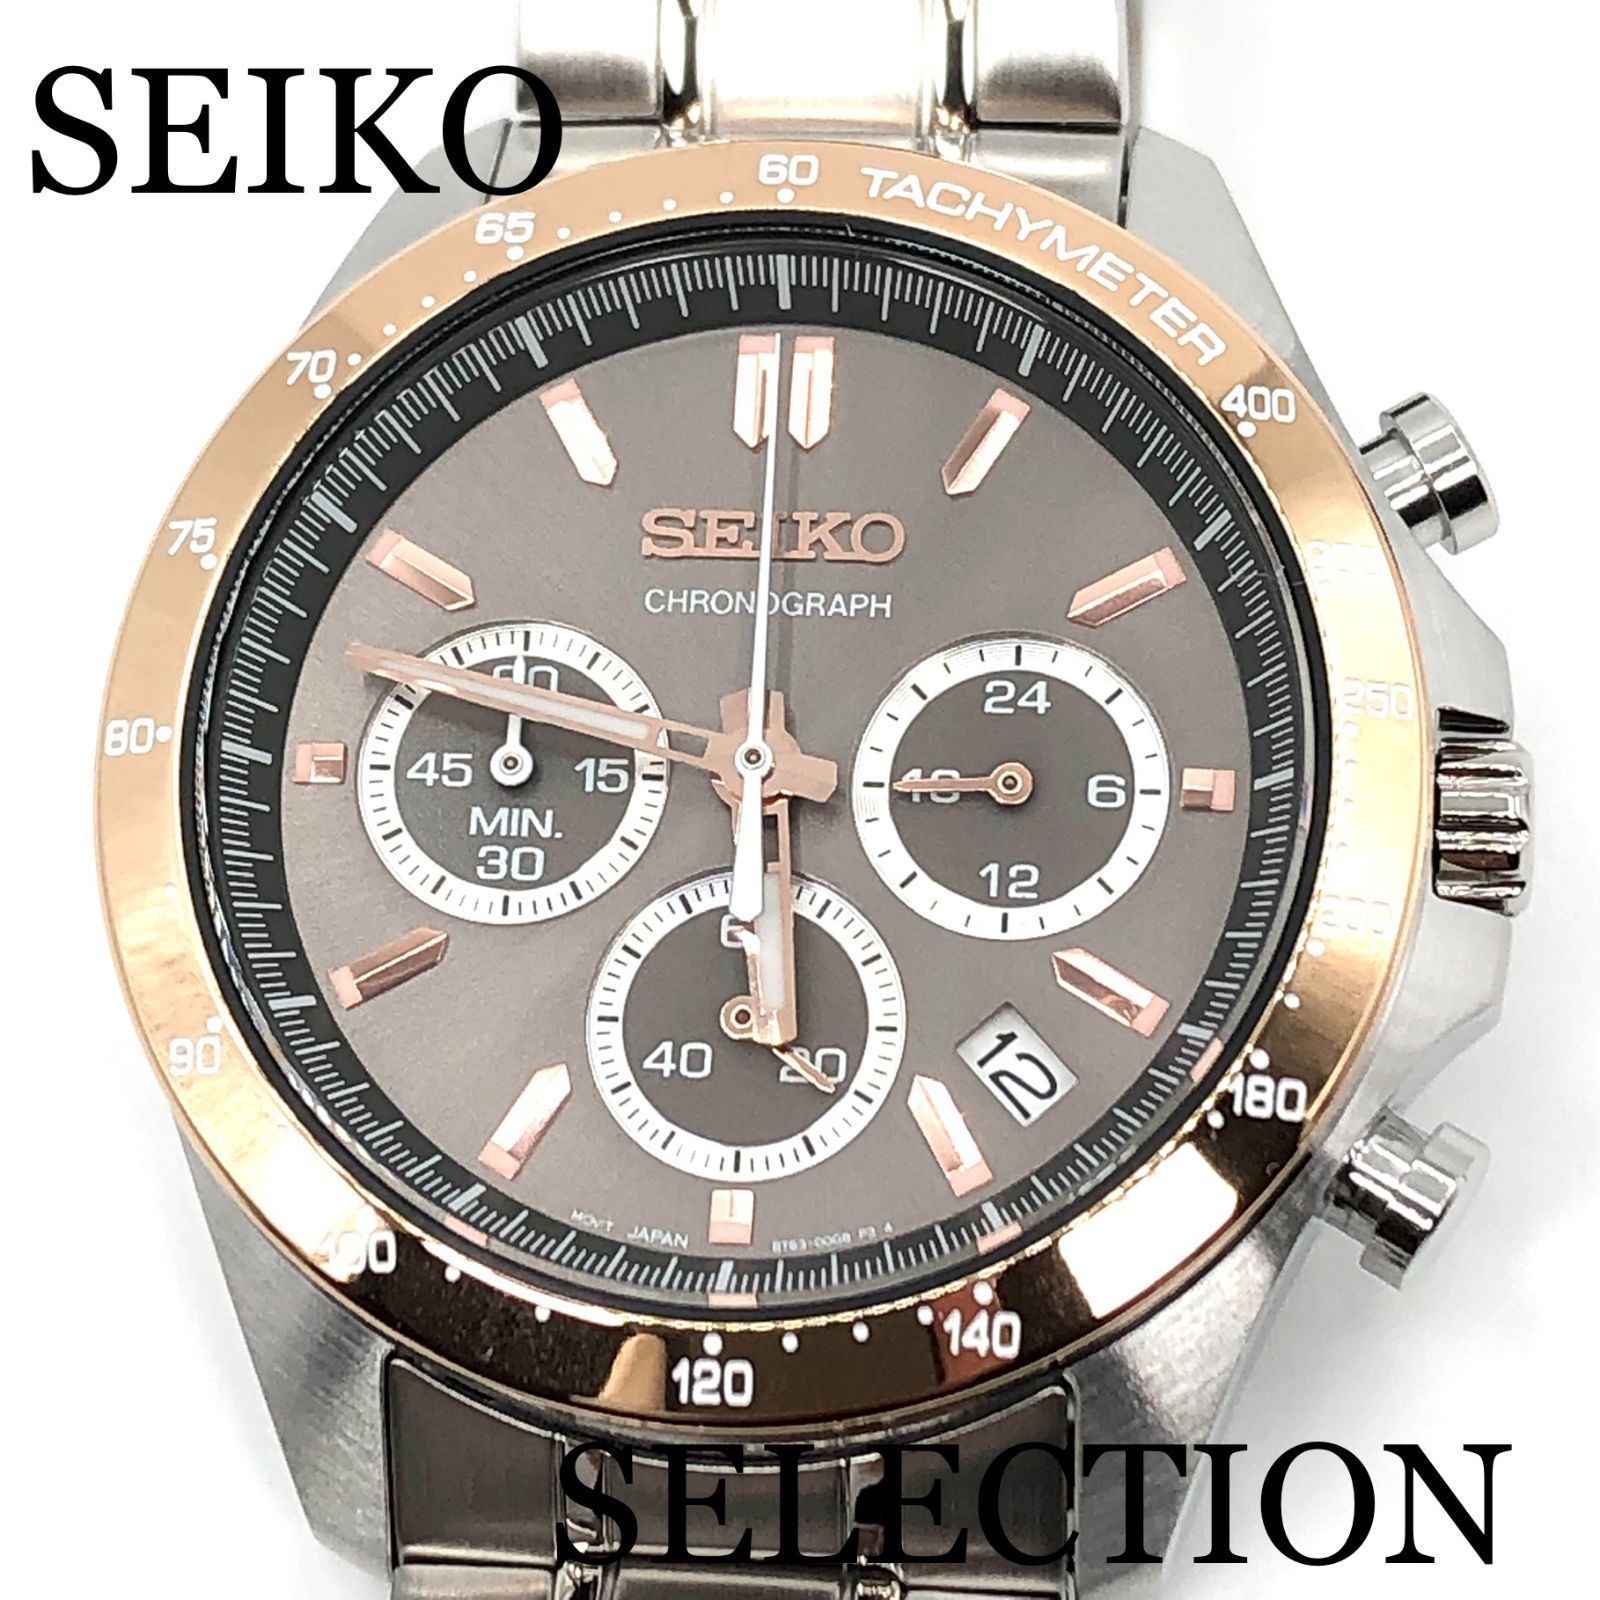 新品正規品『SEIKO SELECTION』セイコー セレクション クロノグラフ 腕時計 メンズ SBTR026【送料無料】 株式会社 正光堂  メルカリ